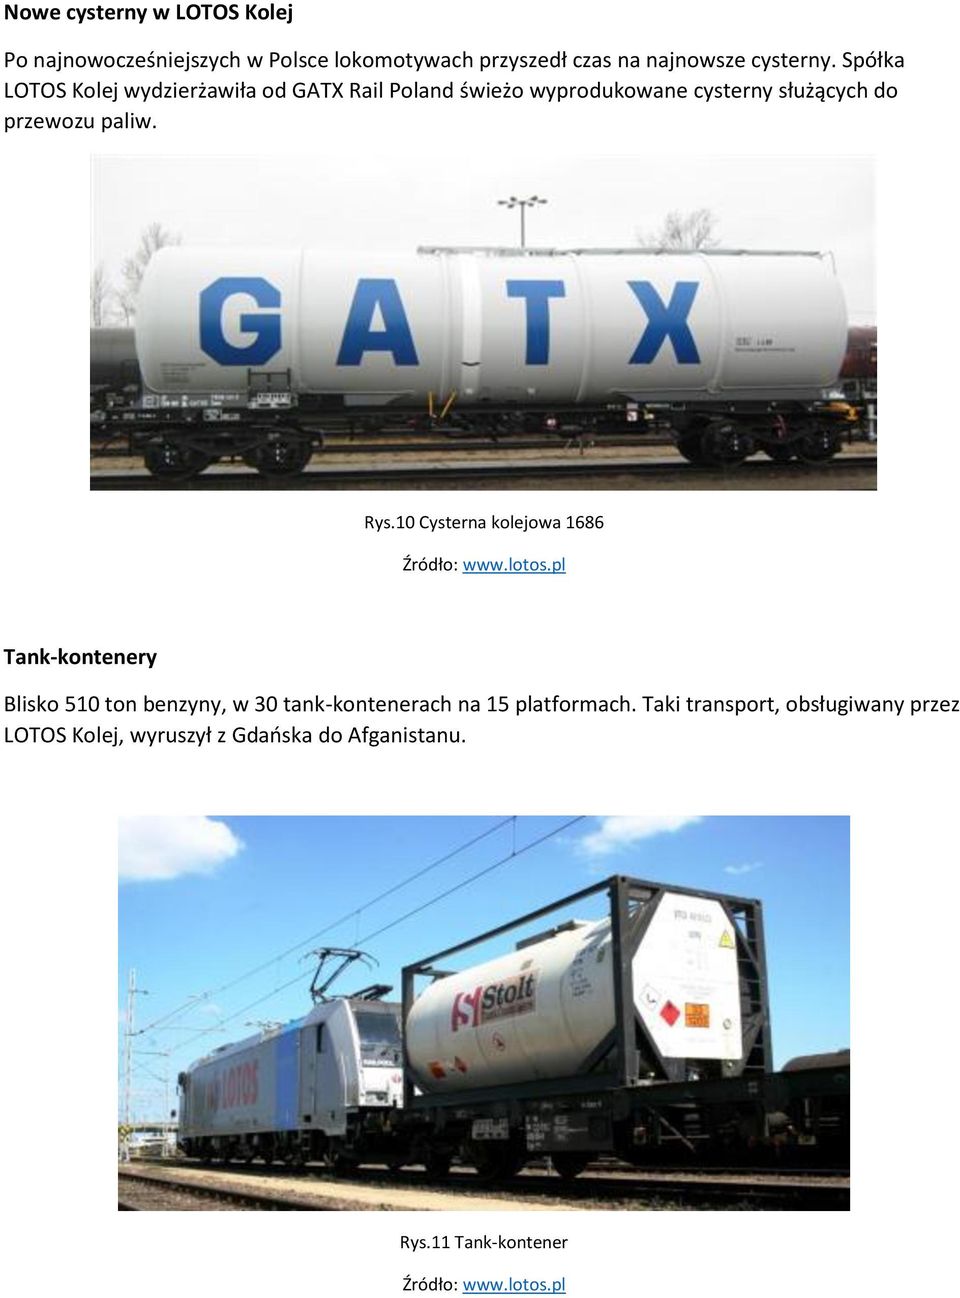 Spółka LOTOS Kolej wydzierżawiła od GATX Rail Poland świeżo wyprodukowane cysterny służących do przewozu